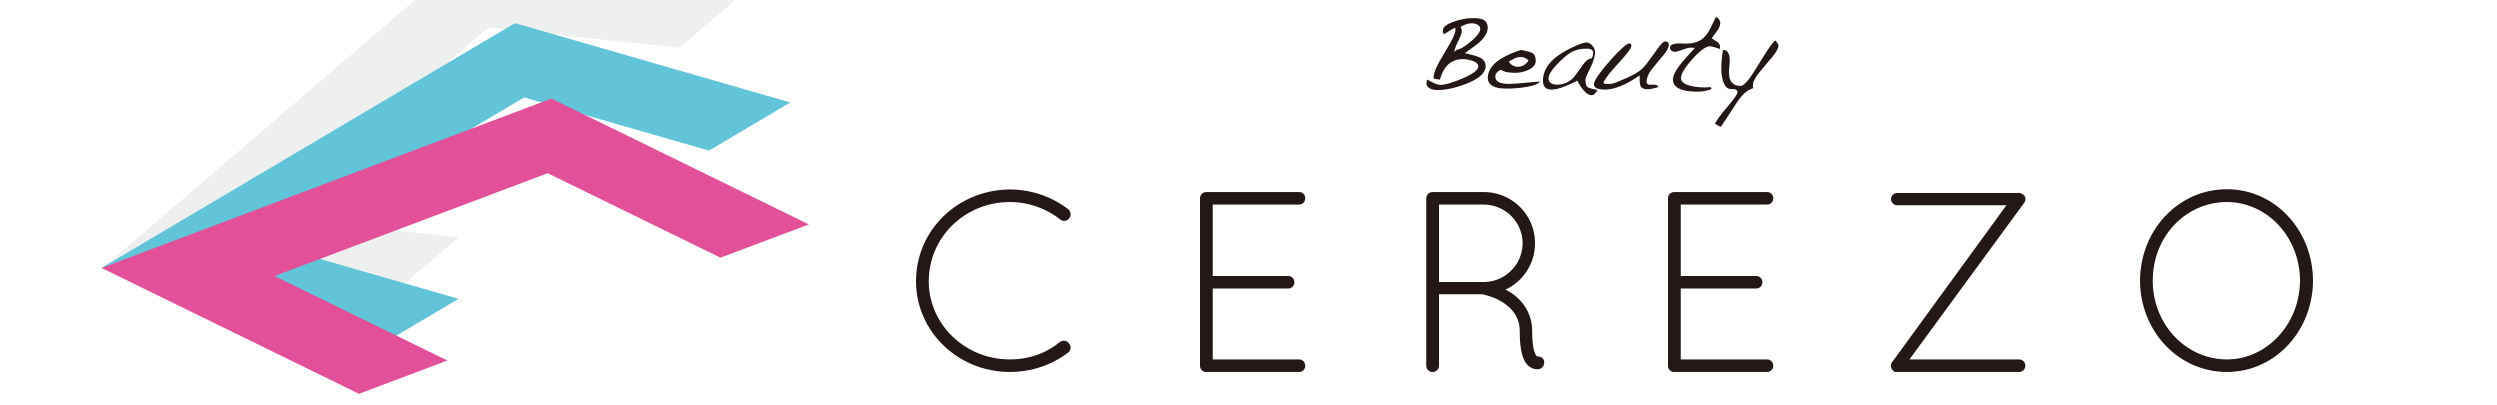 ビューティーセレッソのロゴ